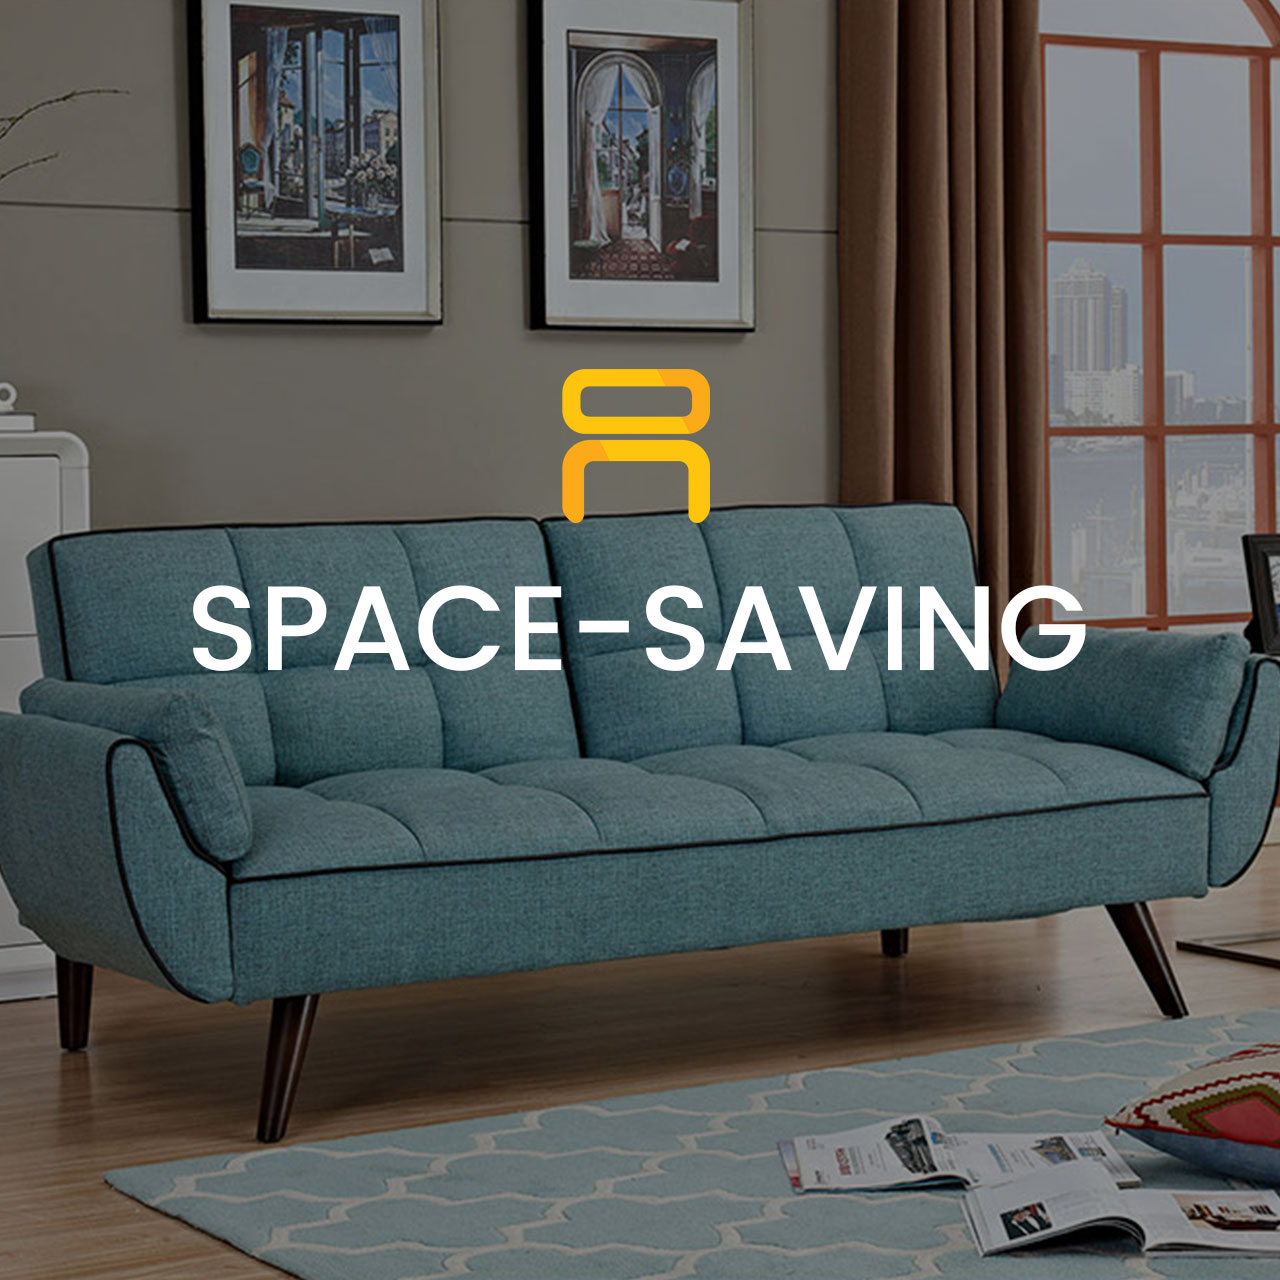 Space-Saving Furniture